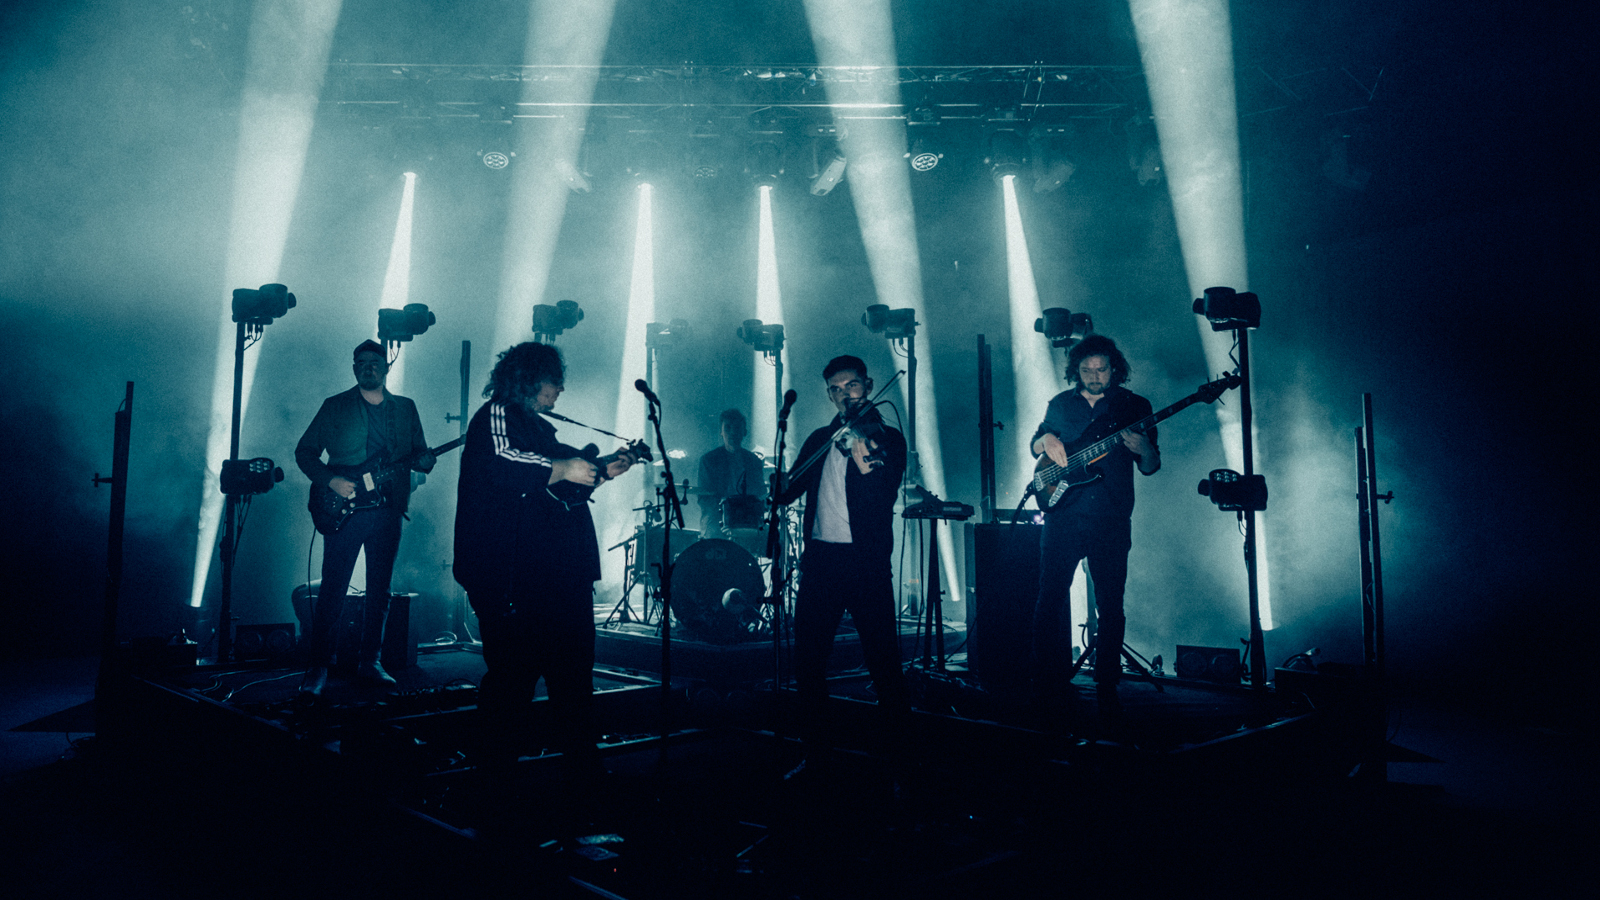 Kuvassa on Elephant Sessions -yhtyeen viisi jäsentä esiintumässä sinertävällä esiintymislavalla, jossa on voimakkaita pystysuoria valoja.  Kuvan alaosa on tumma.